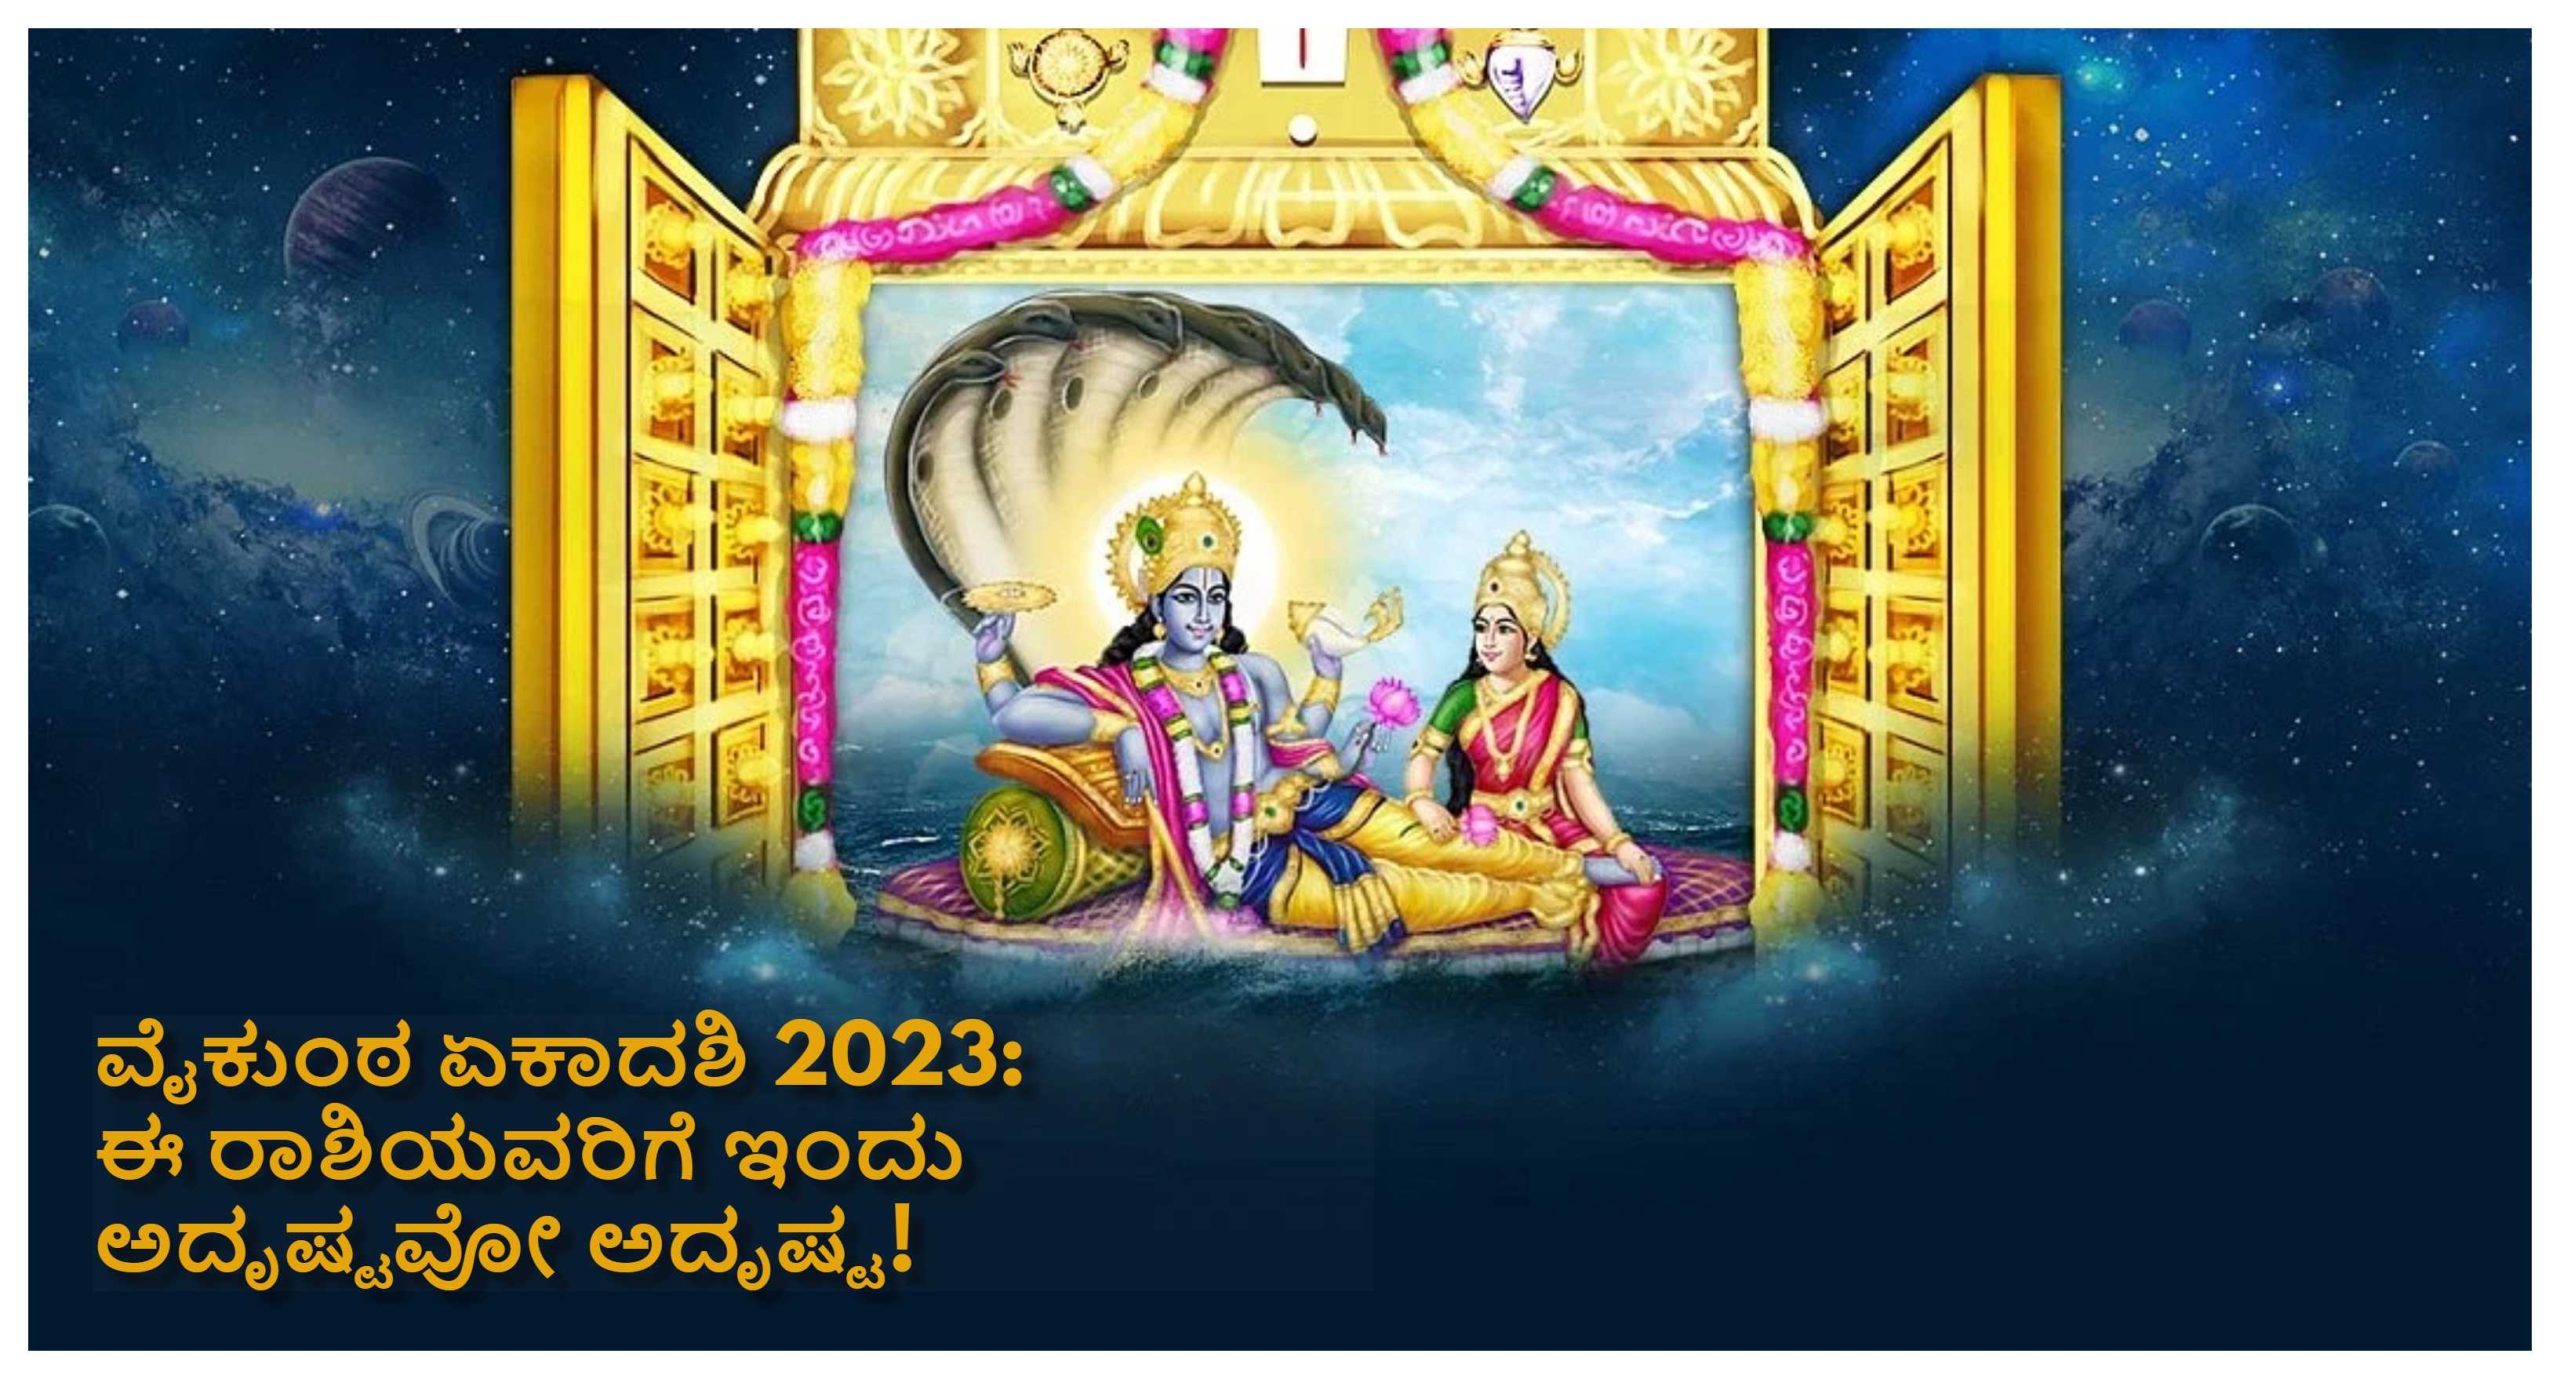 Vaikunta ekadashi 2023 ಹೊಸ ವರ್ಷದ ಮೊದಲ ವೈಕುಂಠ ಏಕಾದಶಿ; ಇದನ್ನು ಆಚರಣೆ